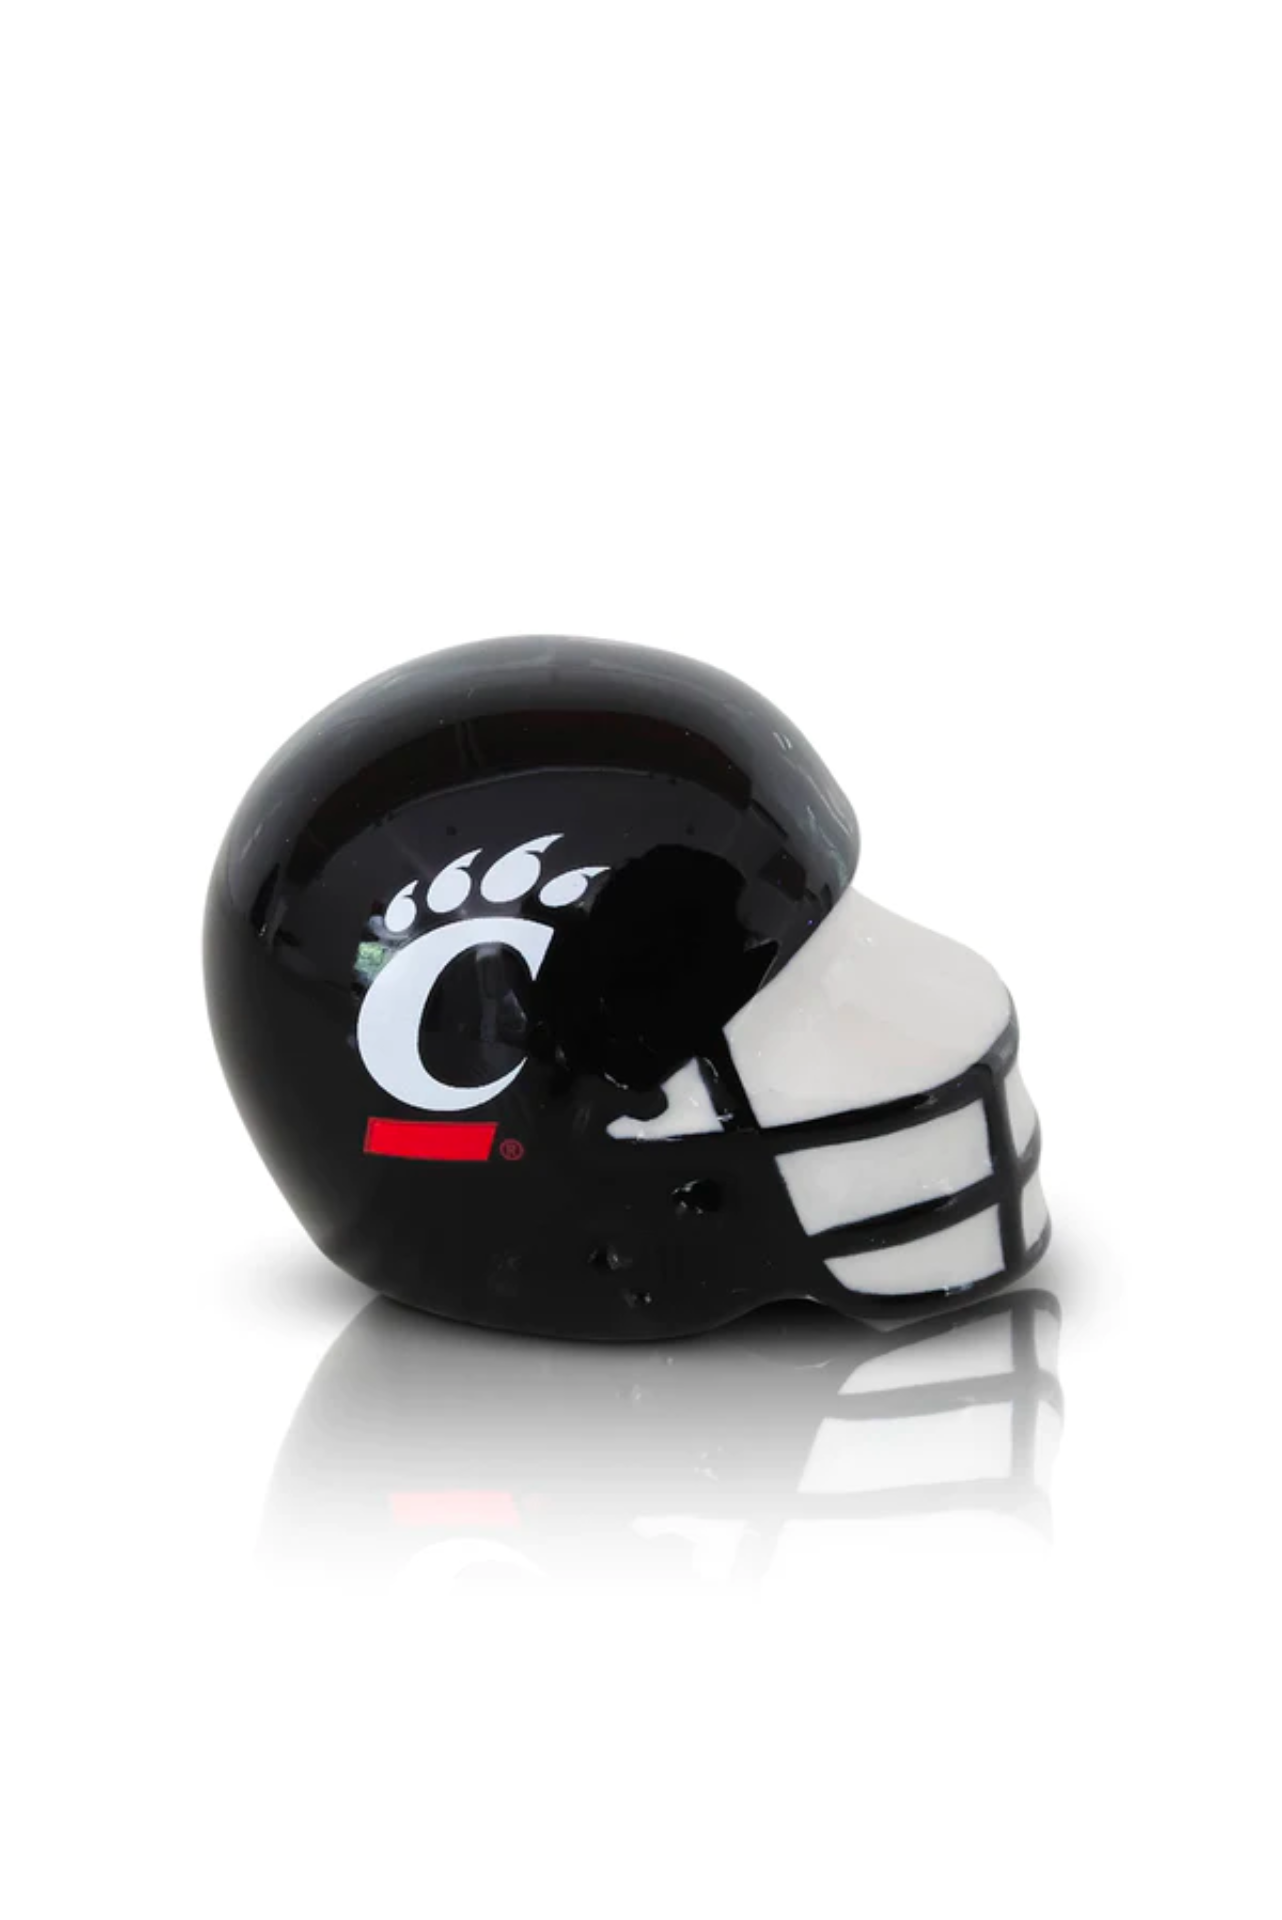 University of Cincinnati - Mini Helmet